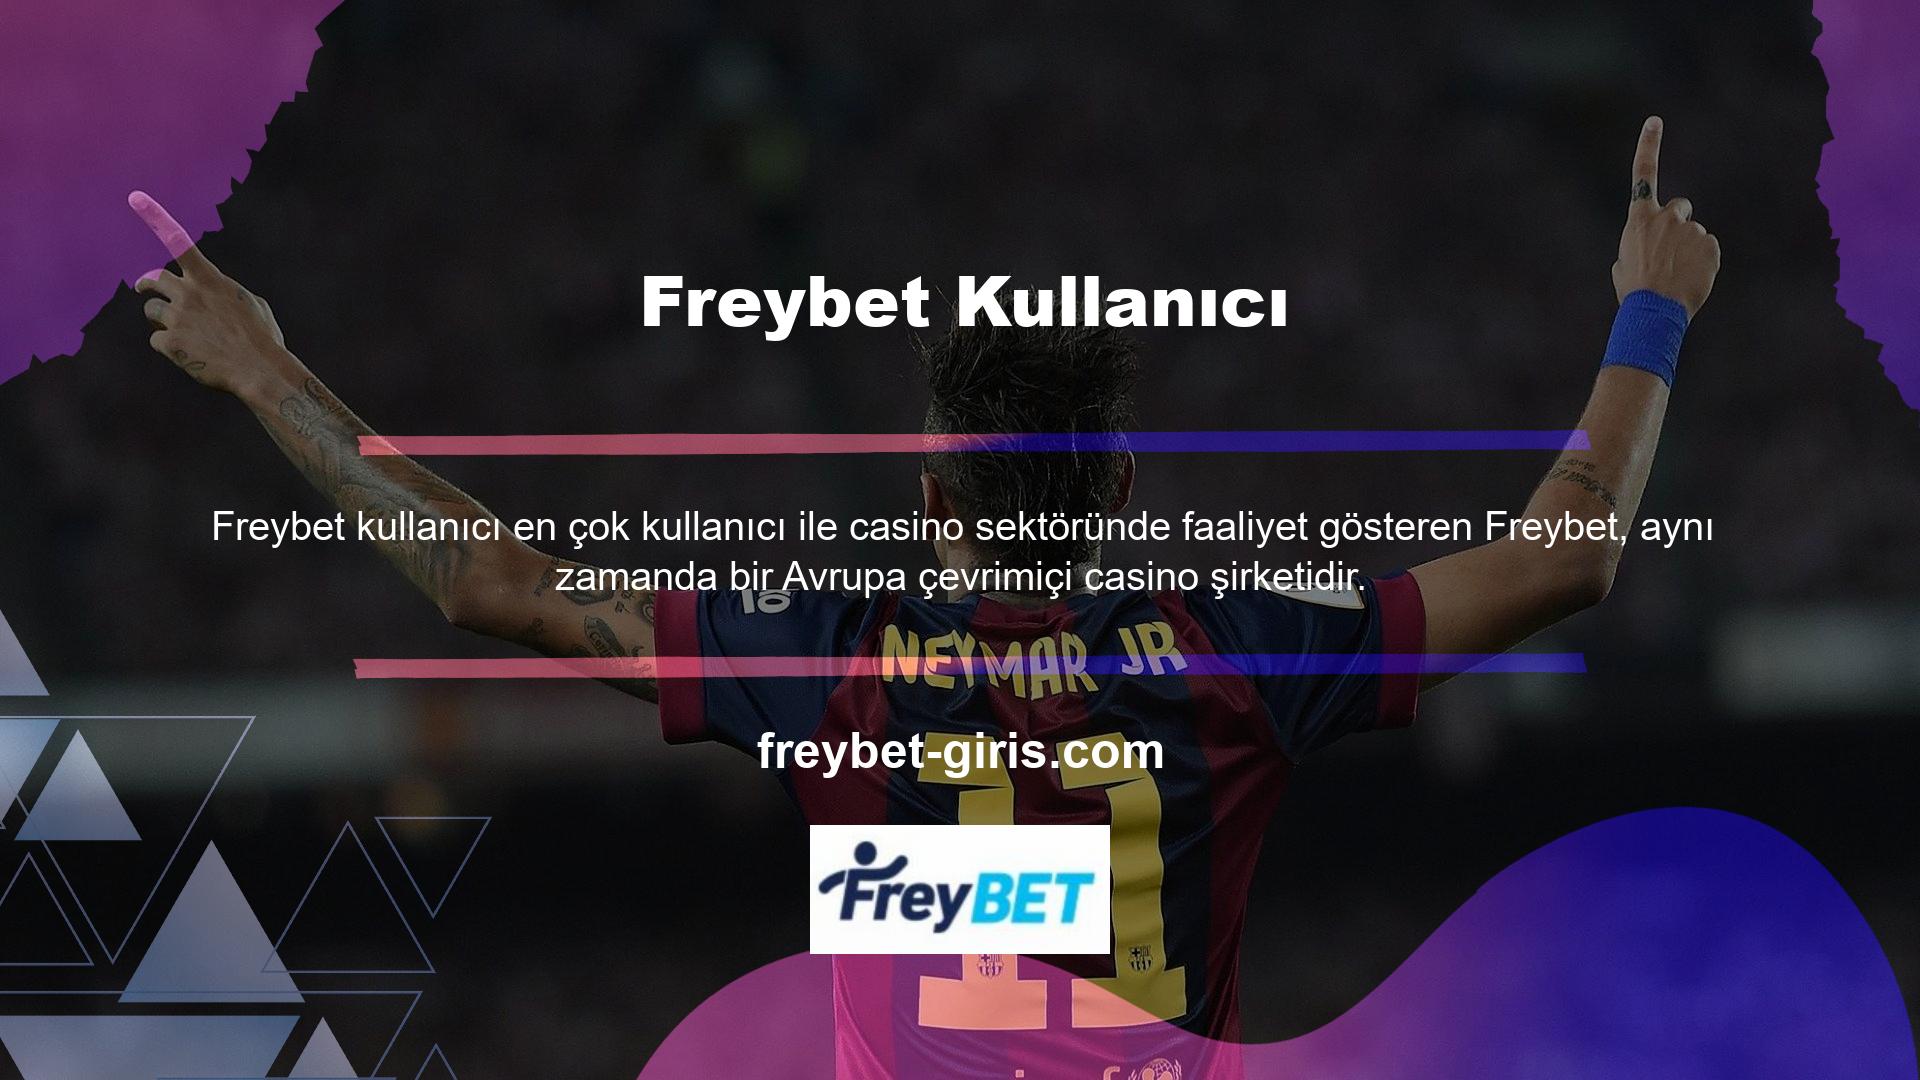 Türkiye'nin uzun vadeli hizmet kalitesi ve güvenilirliği, Freybet bahis sitelerinin kullanıcılar tarafından sıklıkla tercih edildiğini kanıtlamaktadır